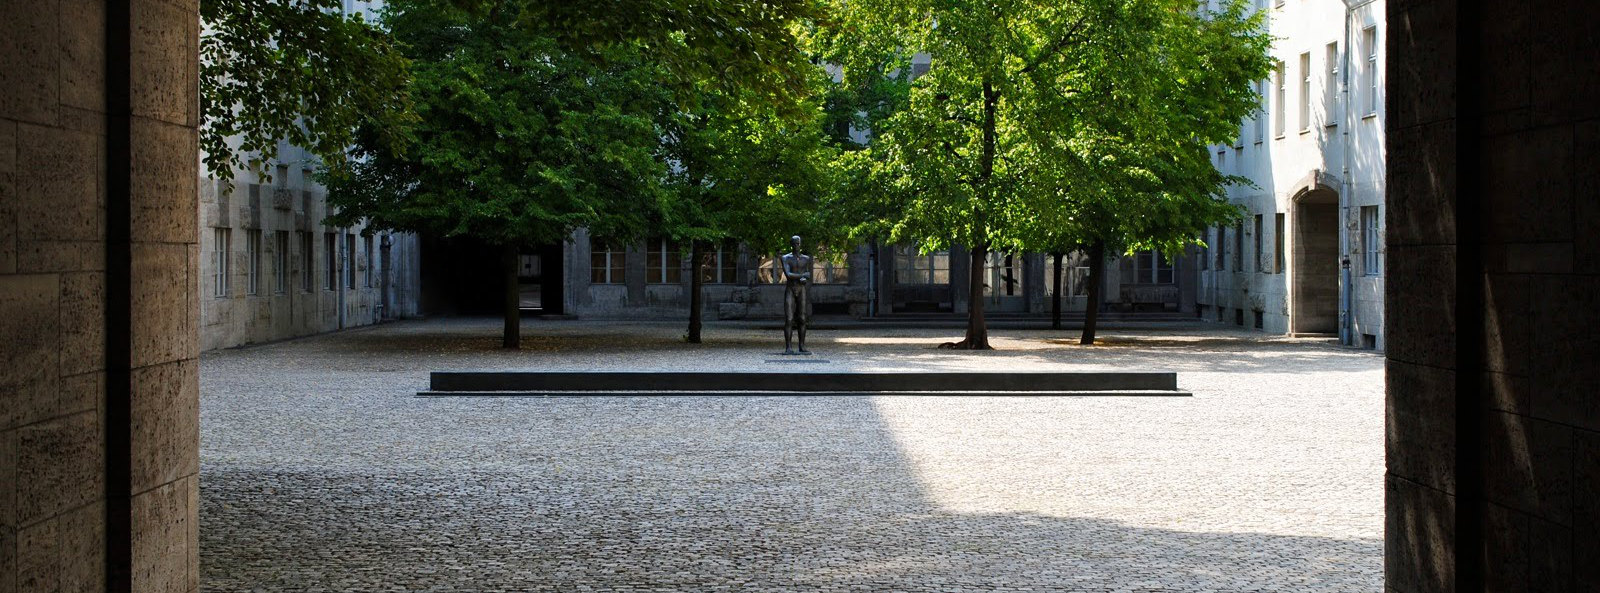 Courtyard where Claus von Stauffenberg was shot